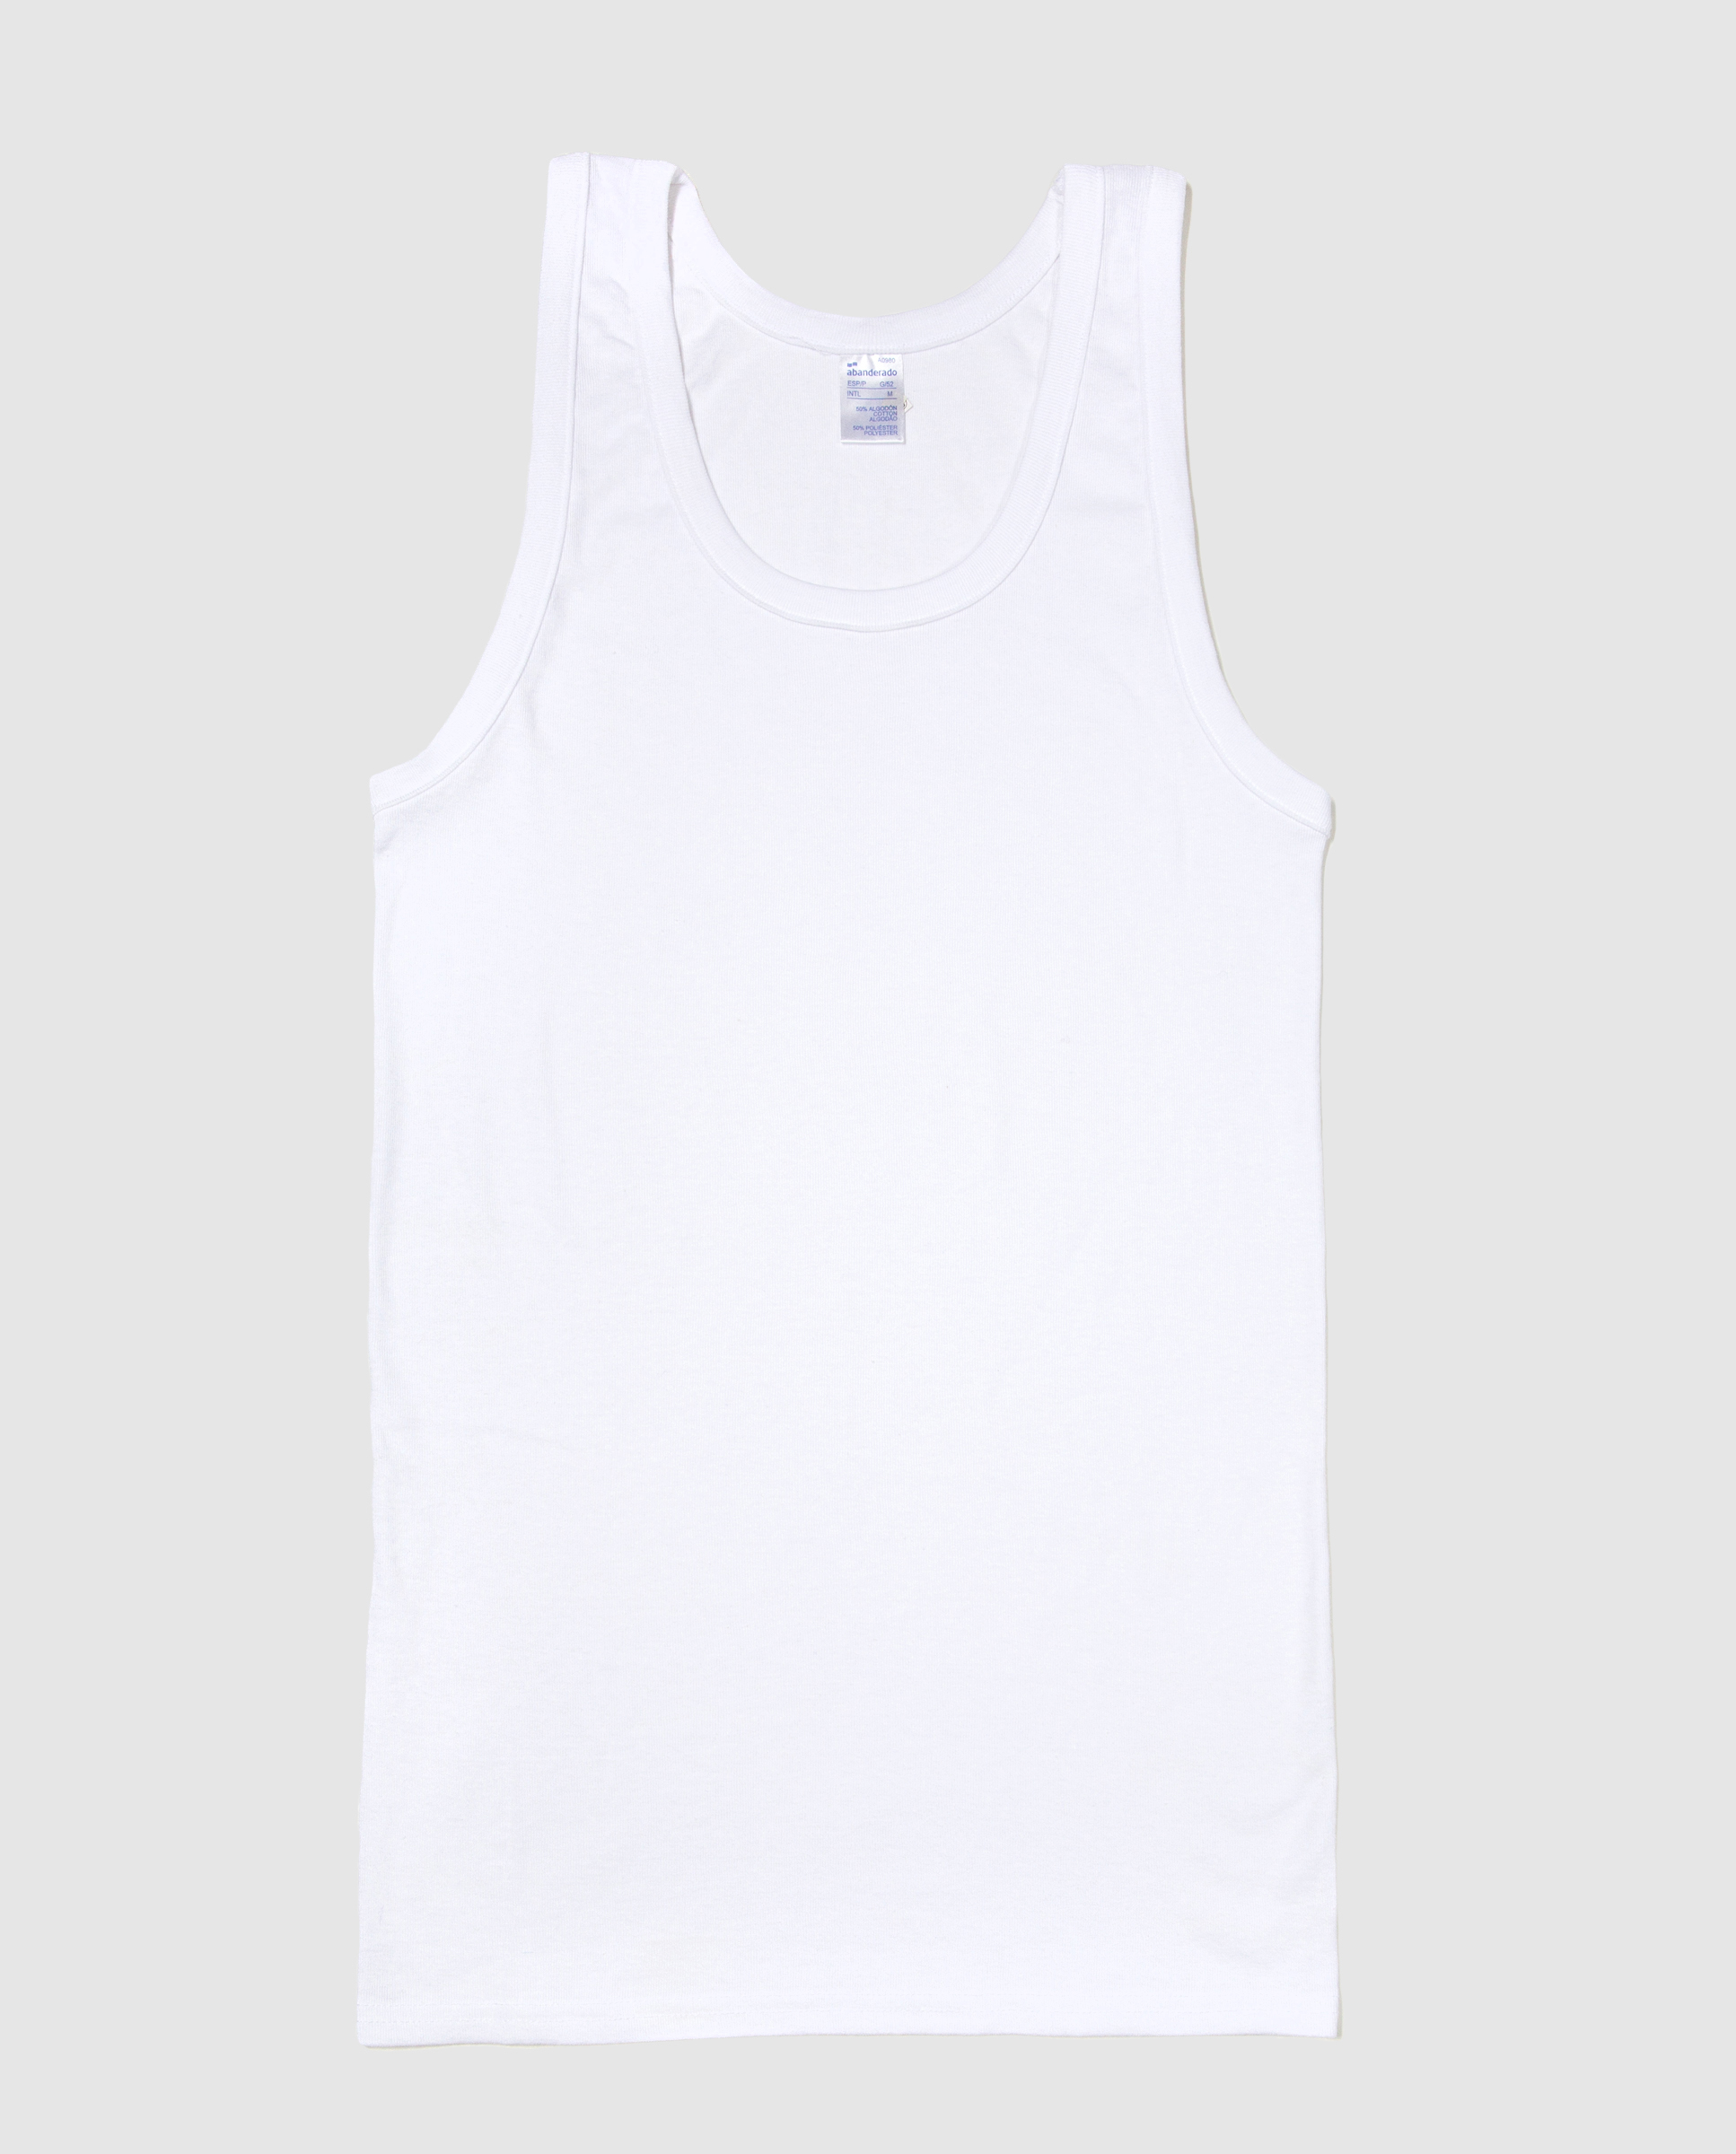 Camiseta interior térmica de hombre en blanco de manga corta · Abanderado ·  El Corte Inglés